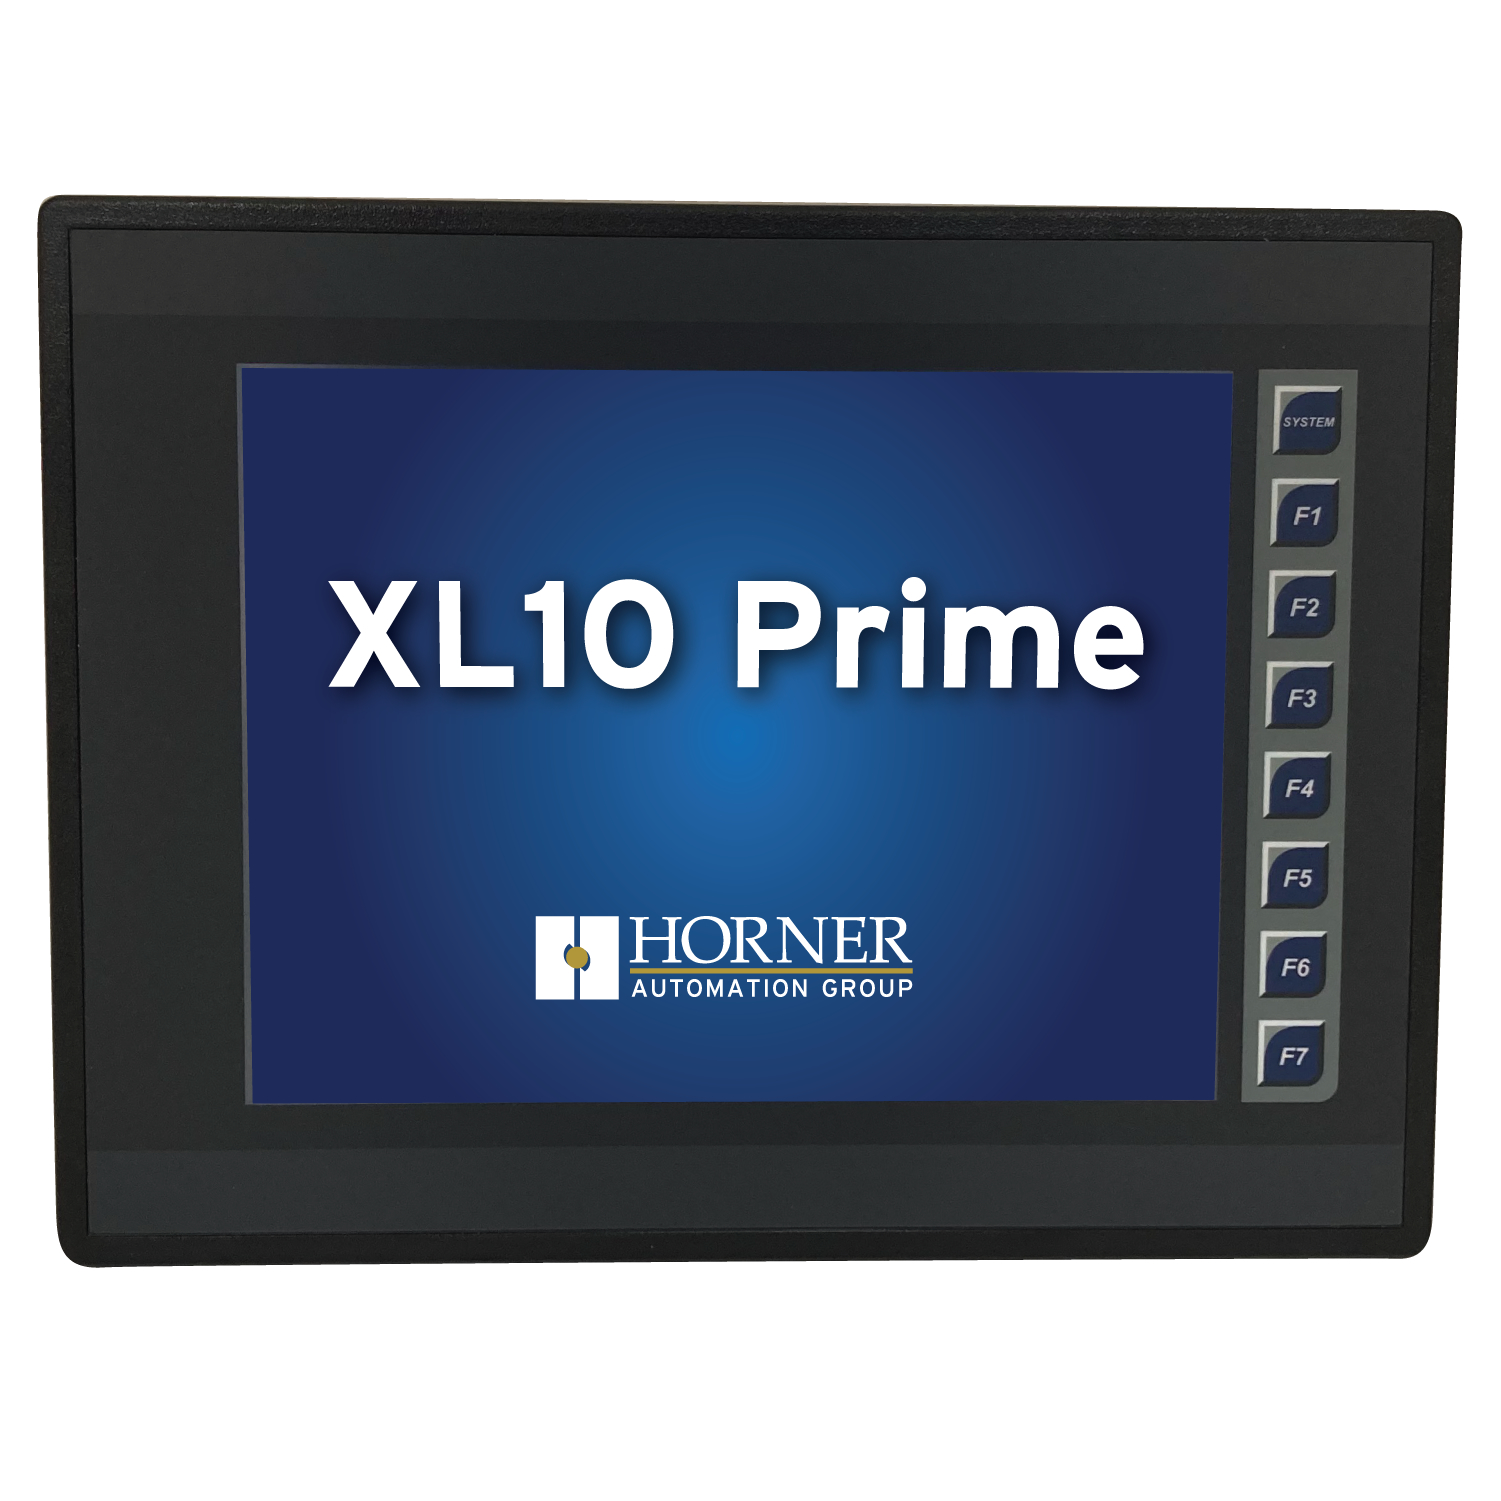  XL10 Prime